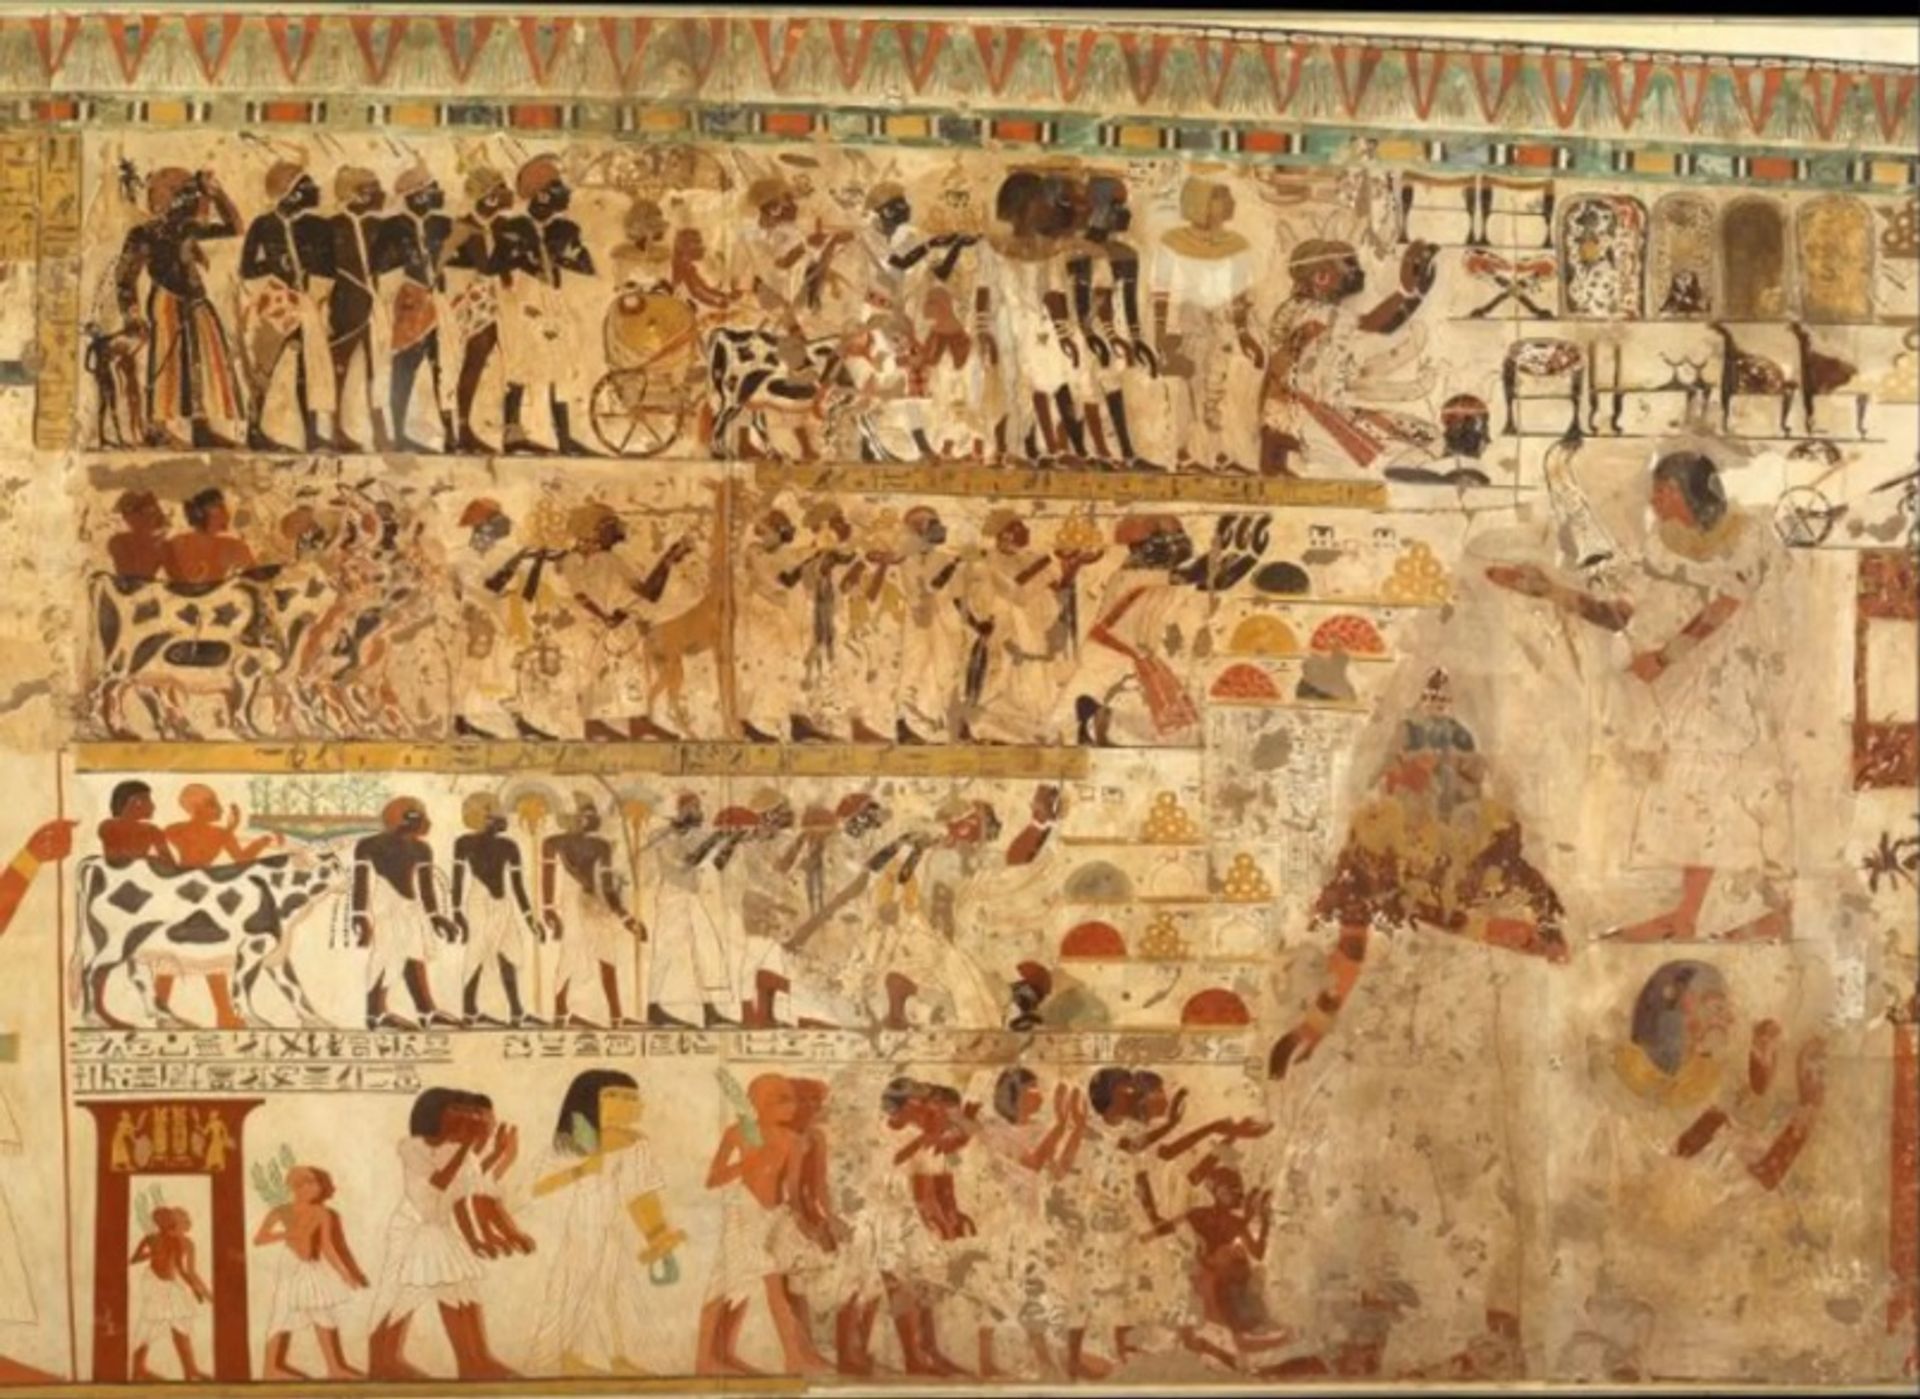 ציור קיר בקברו של Amenhotep-Huy בלוקסור.

באדיבות ויקי ארכיאולוגיה